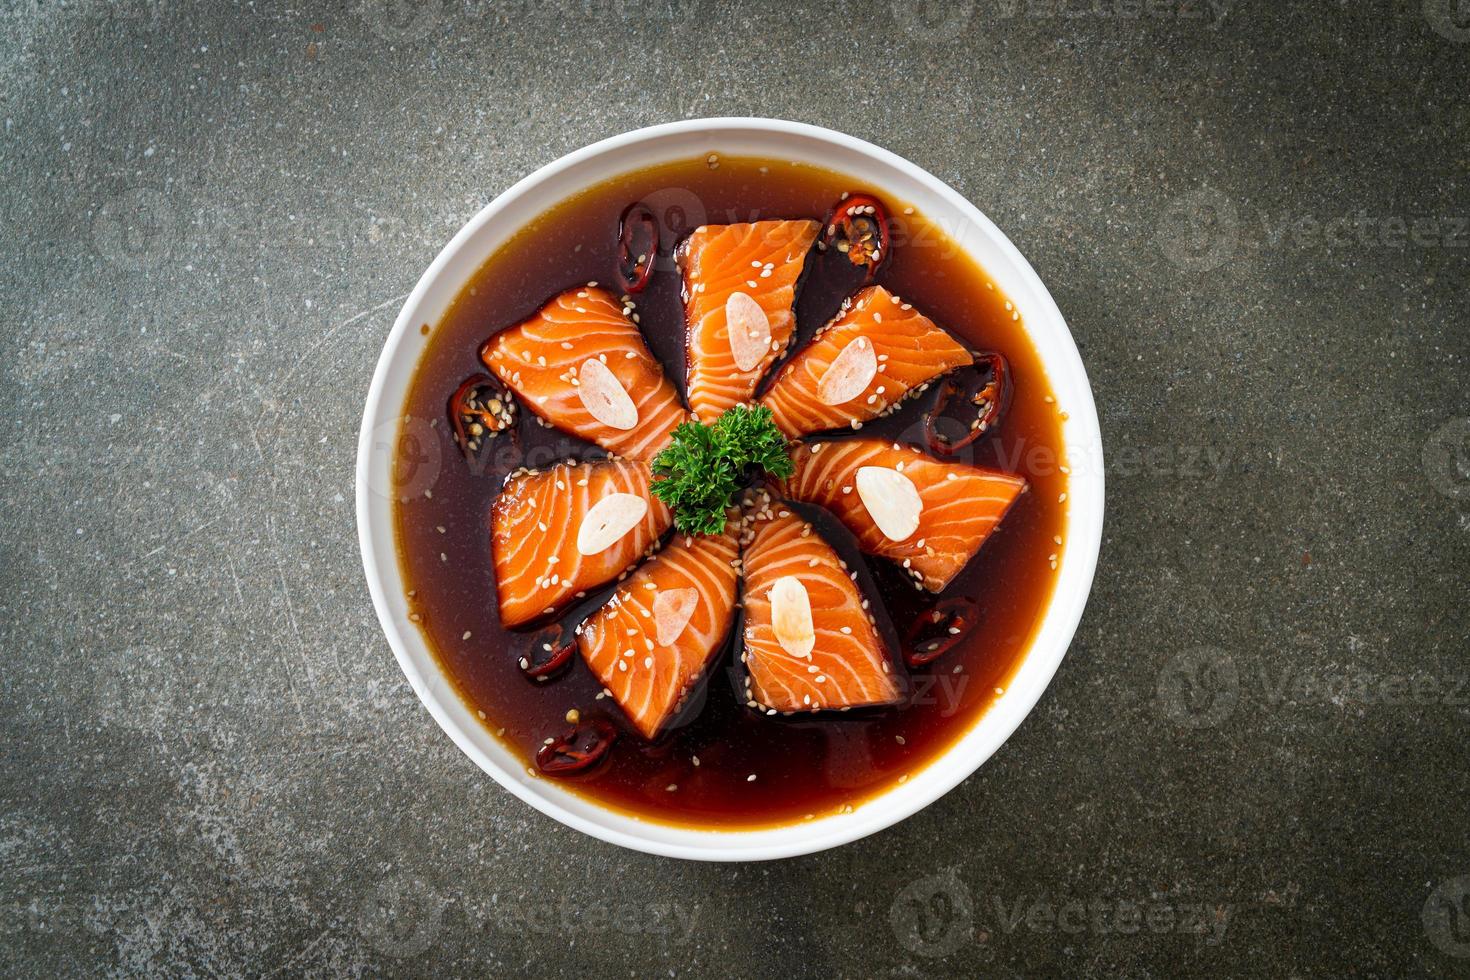 shoyu marinado con salmón o salsa de soja en escabeche con salmón foto